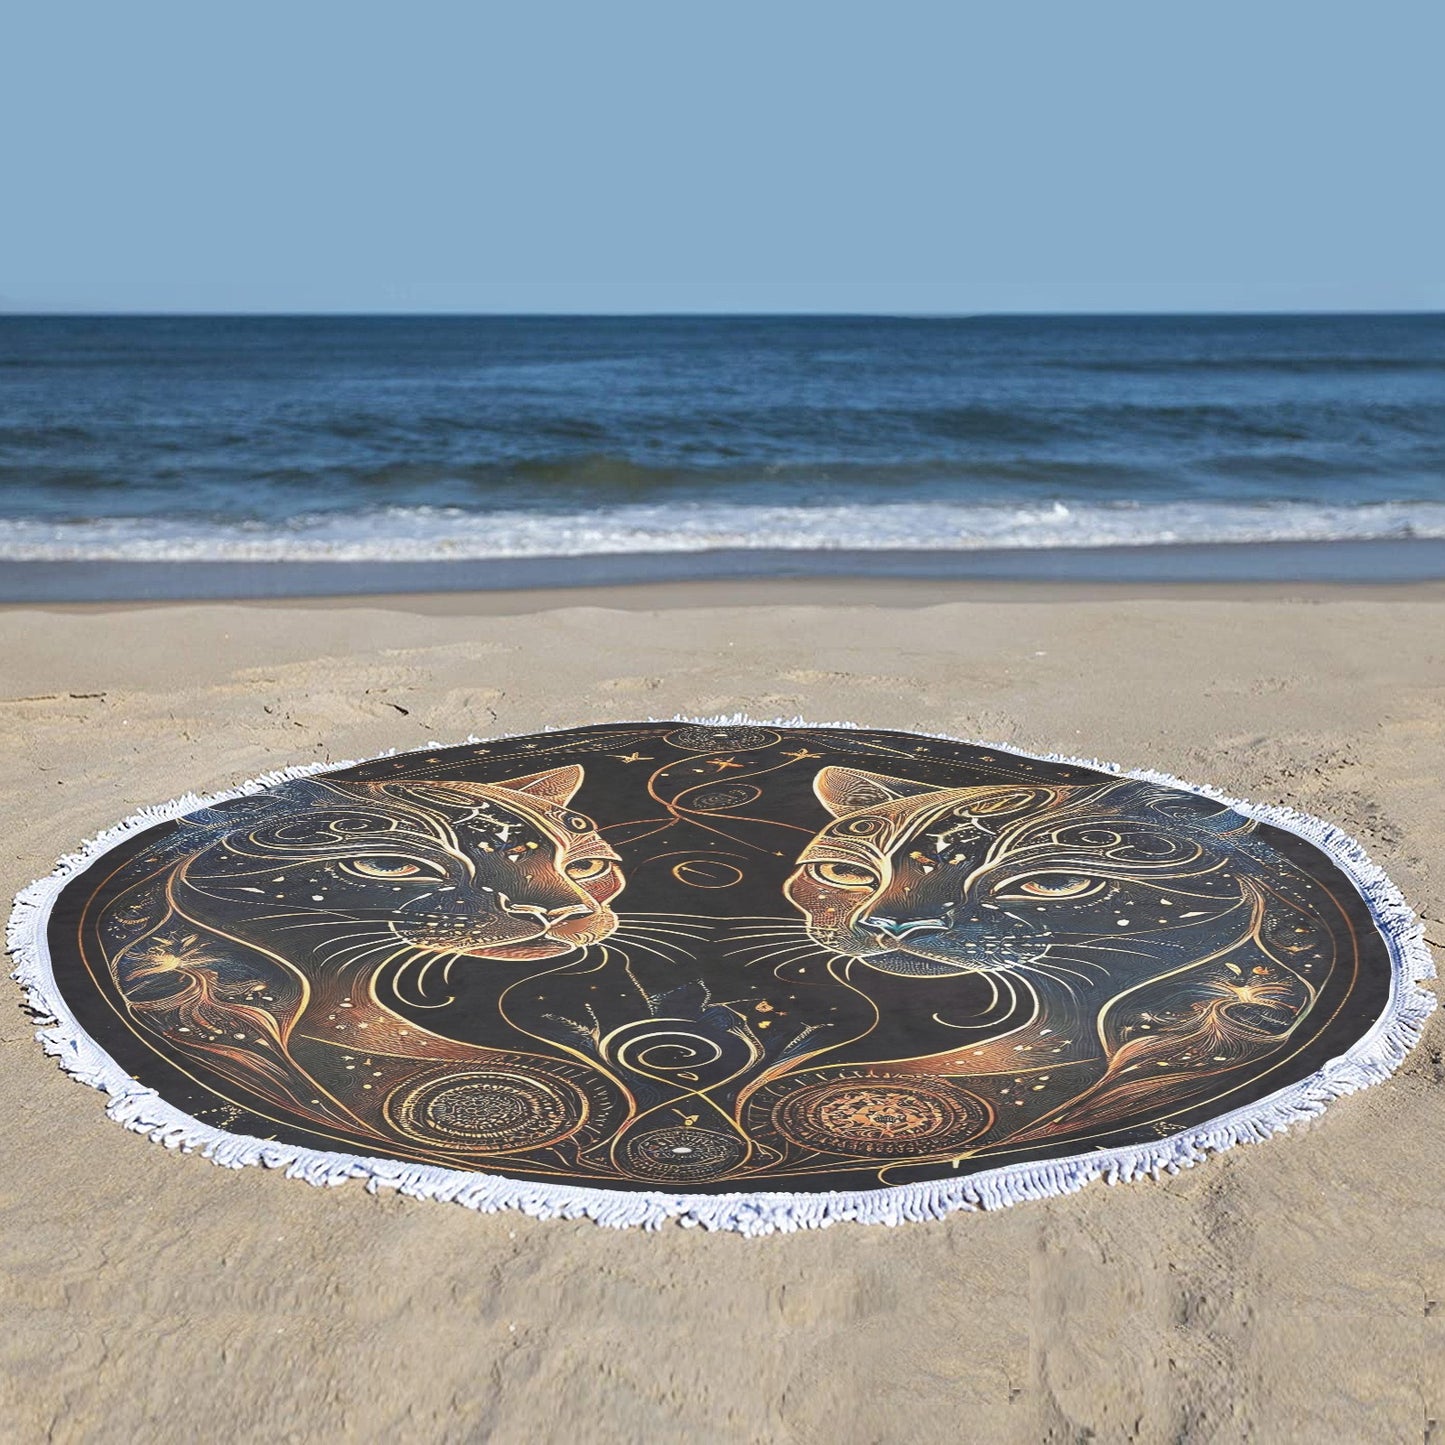 Gemini Cats Circular Beach Shawl Towel 59"x 59" - Circular Beach Shawl Towel 59"x 59" - Zanlana Design and Home Decor